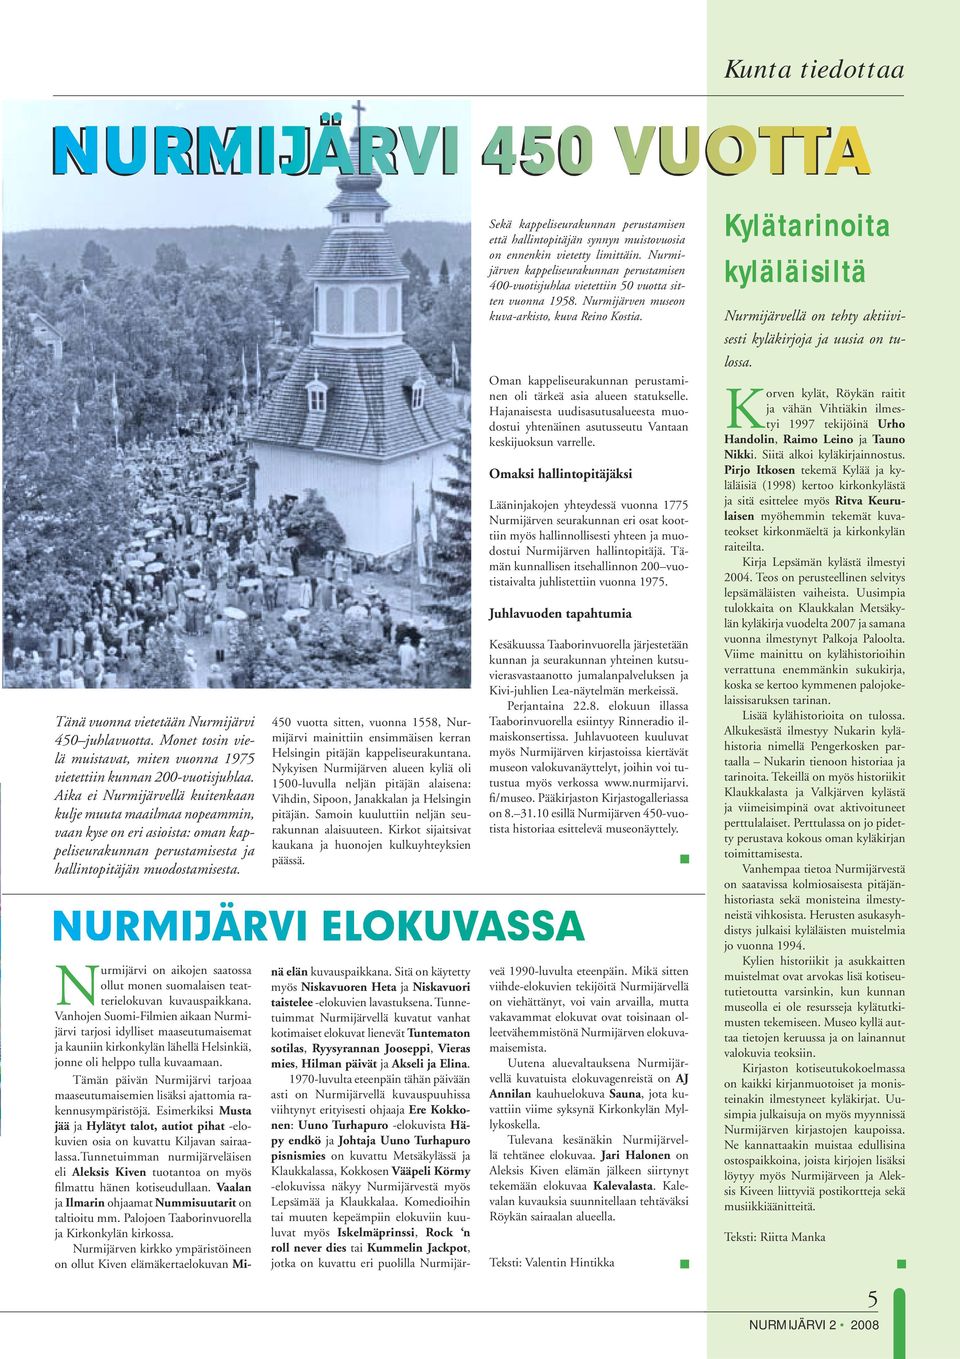 Kylätarinoita kyläläisiltä Nurmijärvellä on tehty aktiivisesti kyläkirjoja ja uusia on tulossa. Tänä vuonna vietetään Nurmijärvi 450 juhlavuotta.